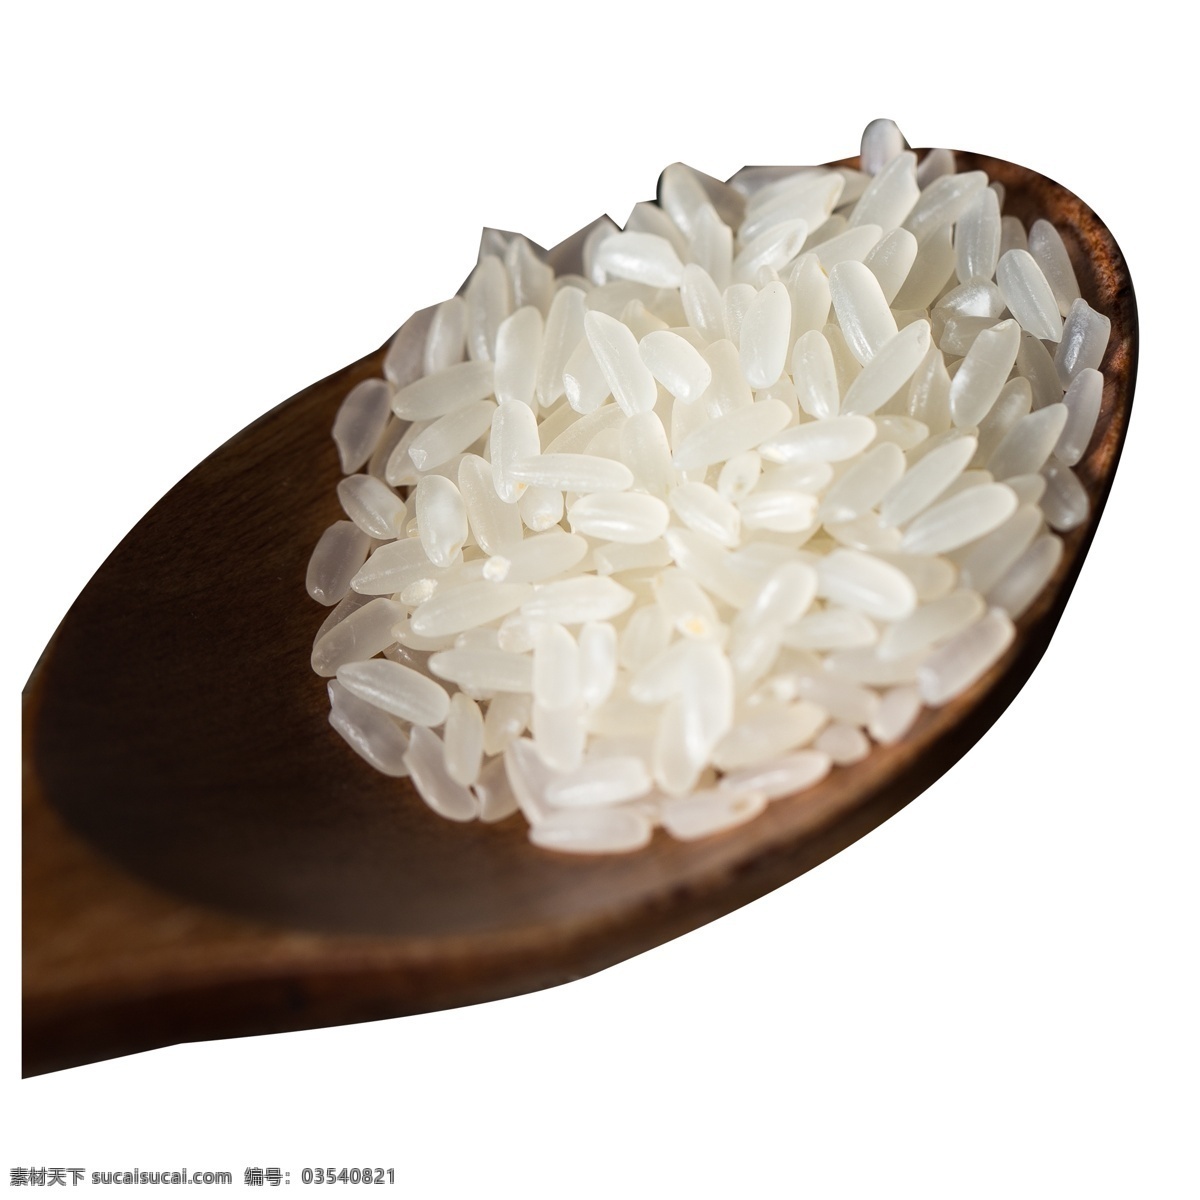 实拍 五谷 勺 大米 米 白色 食物 五谷粮食 种植 水稻 水稻种植大米 米饭 粮食 白色大米 一勺大米